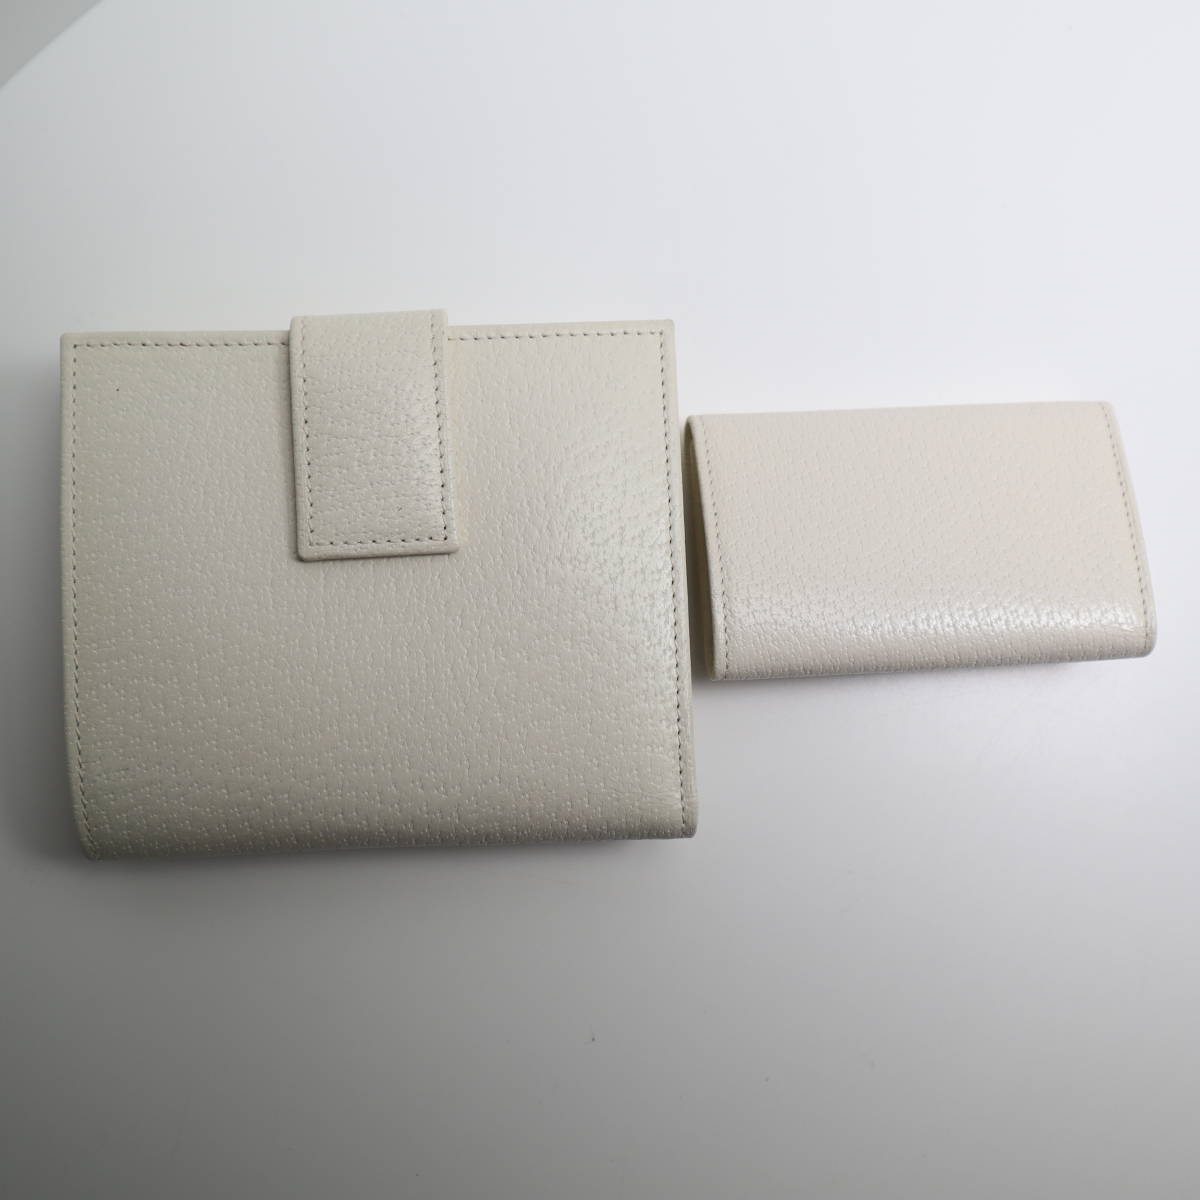 グッチ Gucci 財布・6連キーケース セット イタリア製 箱付き_画像3